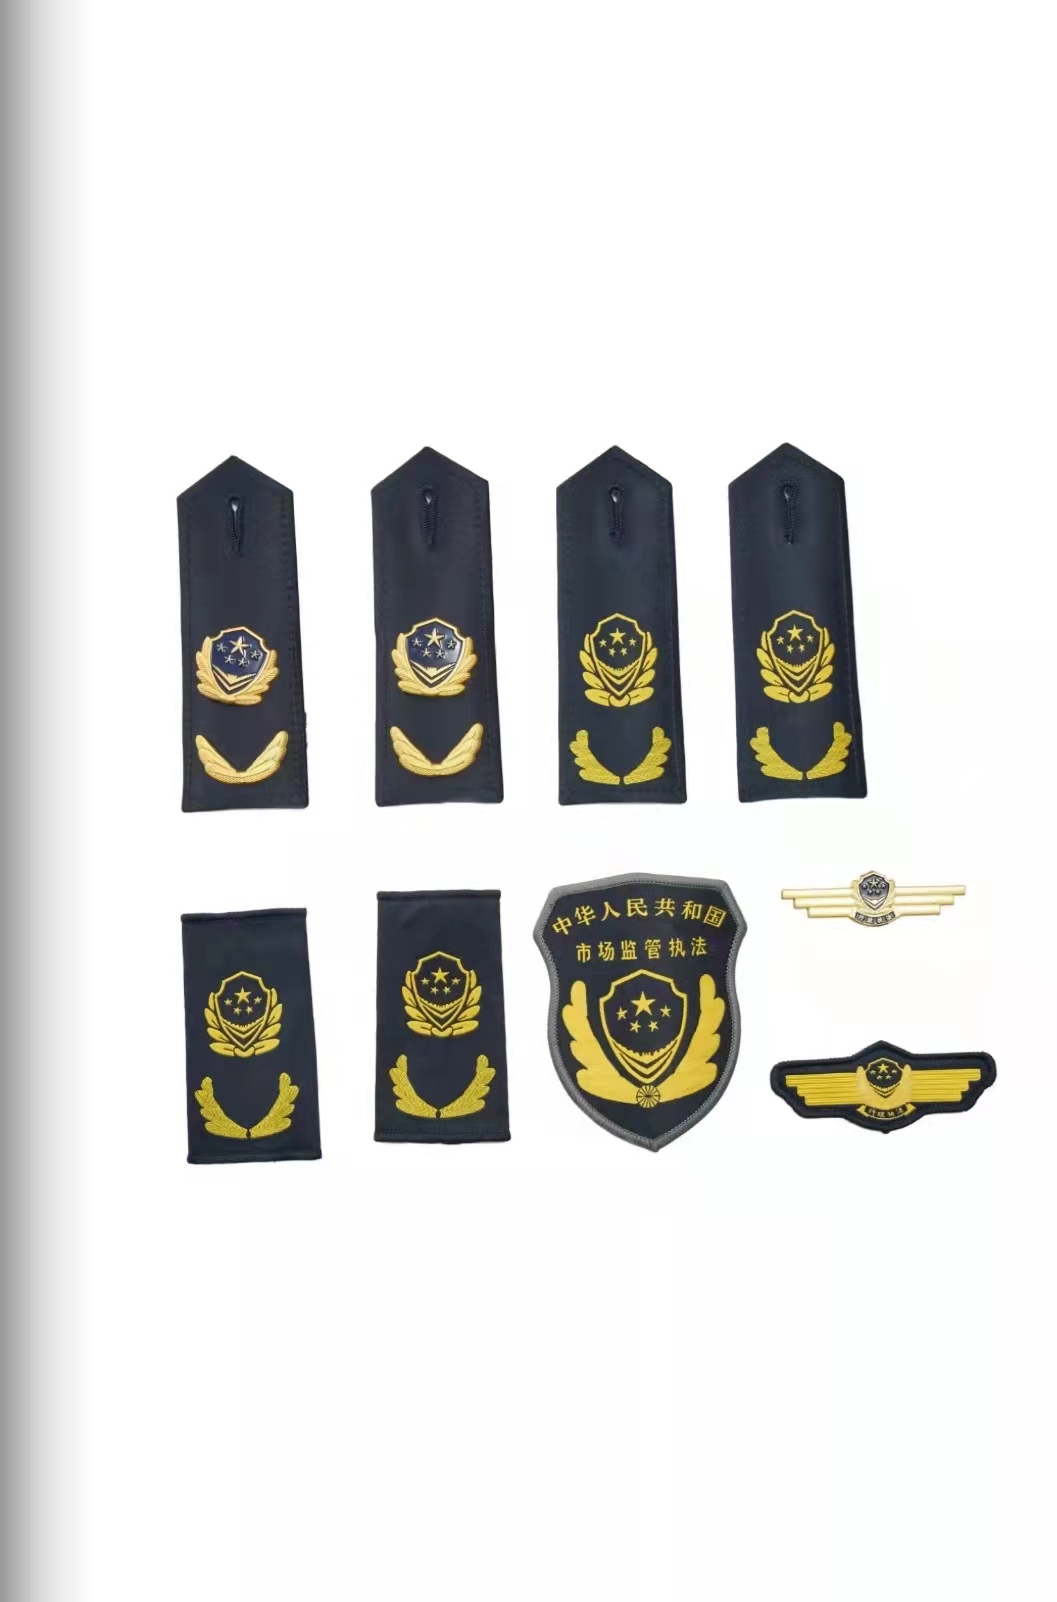 双鸭山六部门统一市场监管执法制服标志